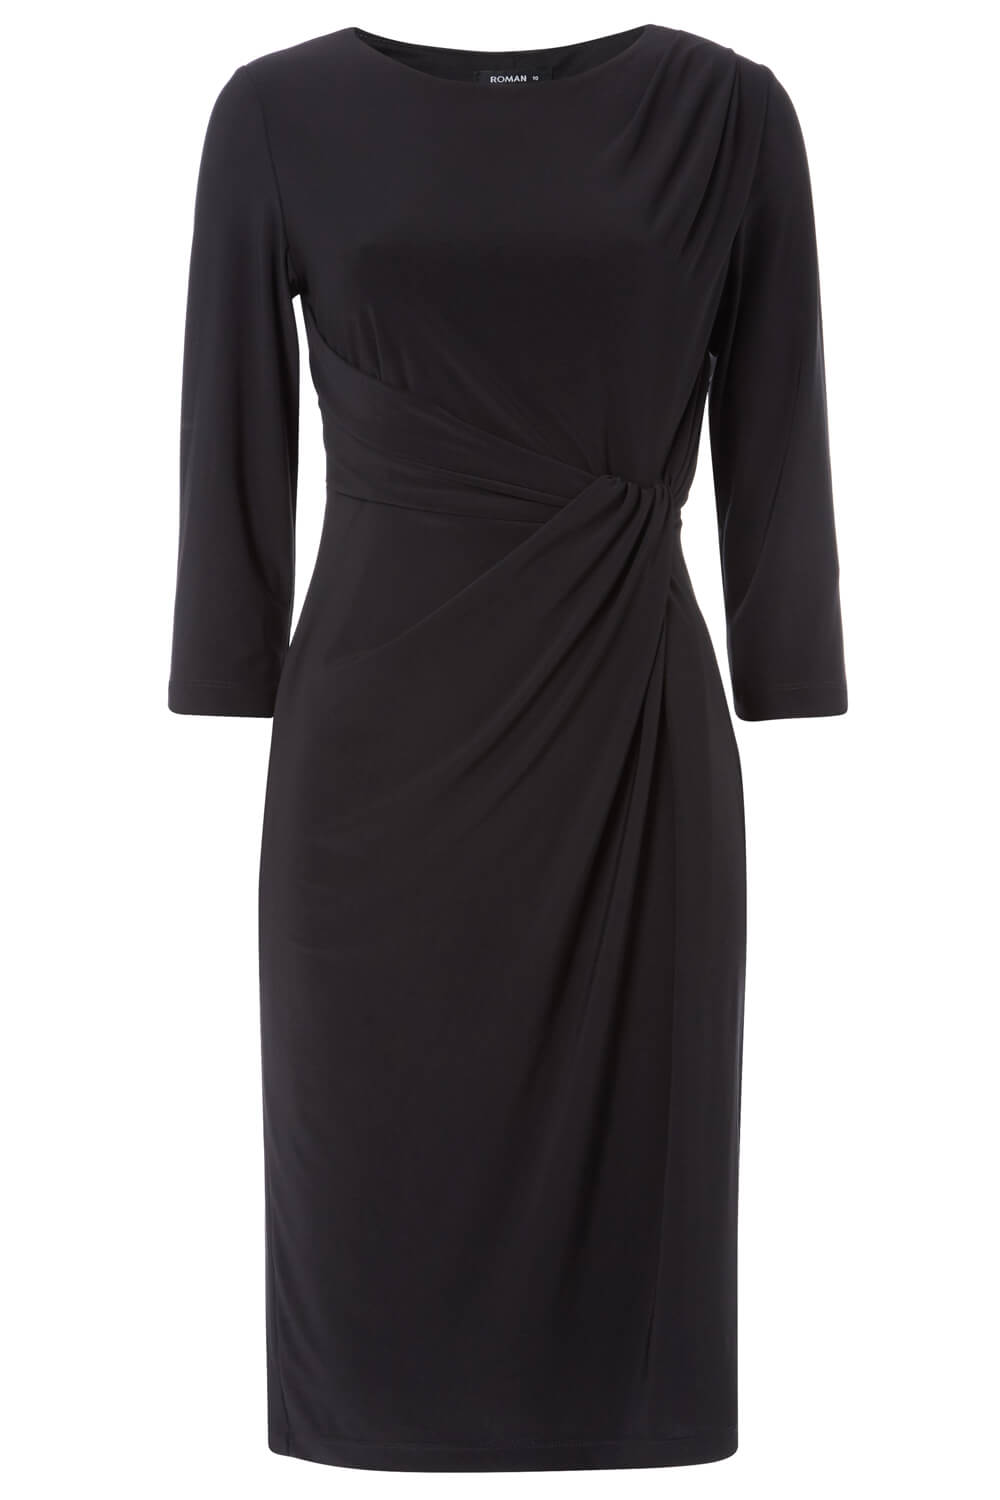 Black 3/4 Sleeve Twist Waist Dress, Image 5 of 5